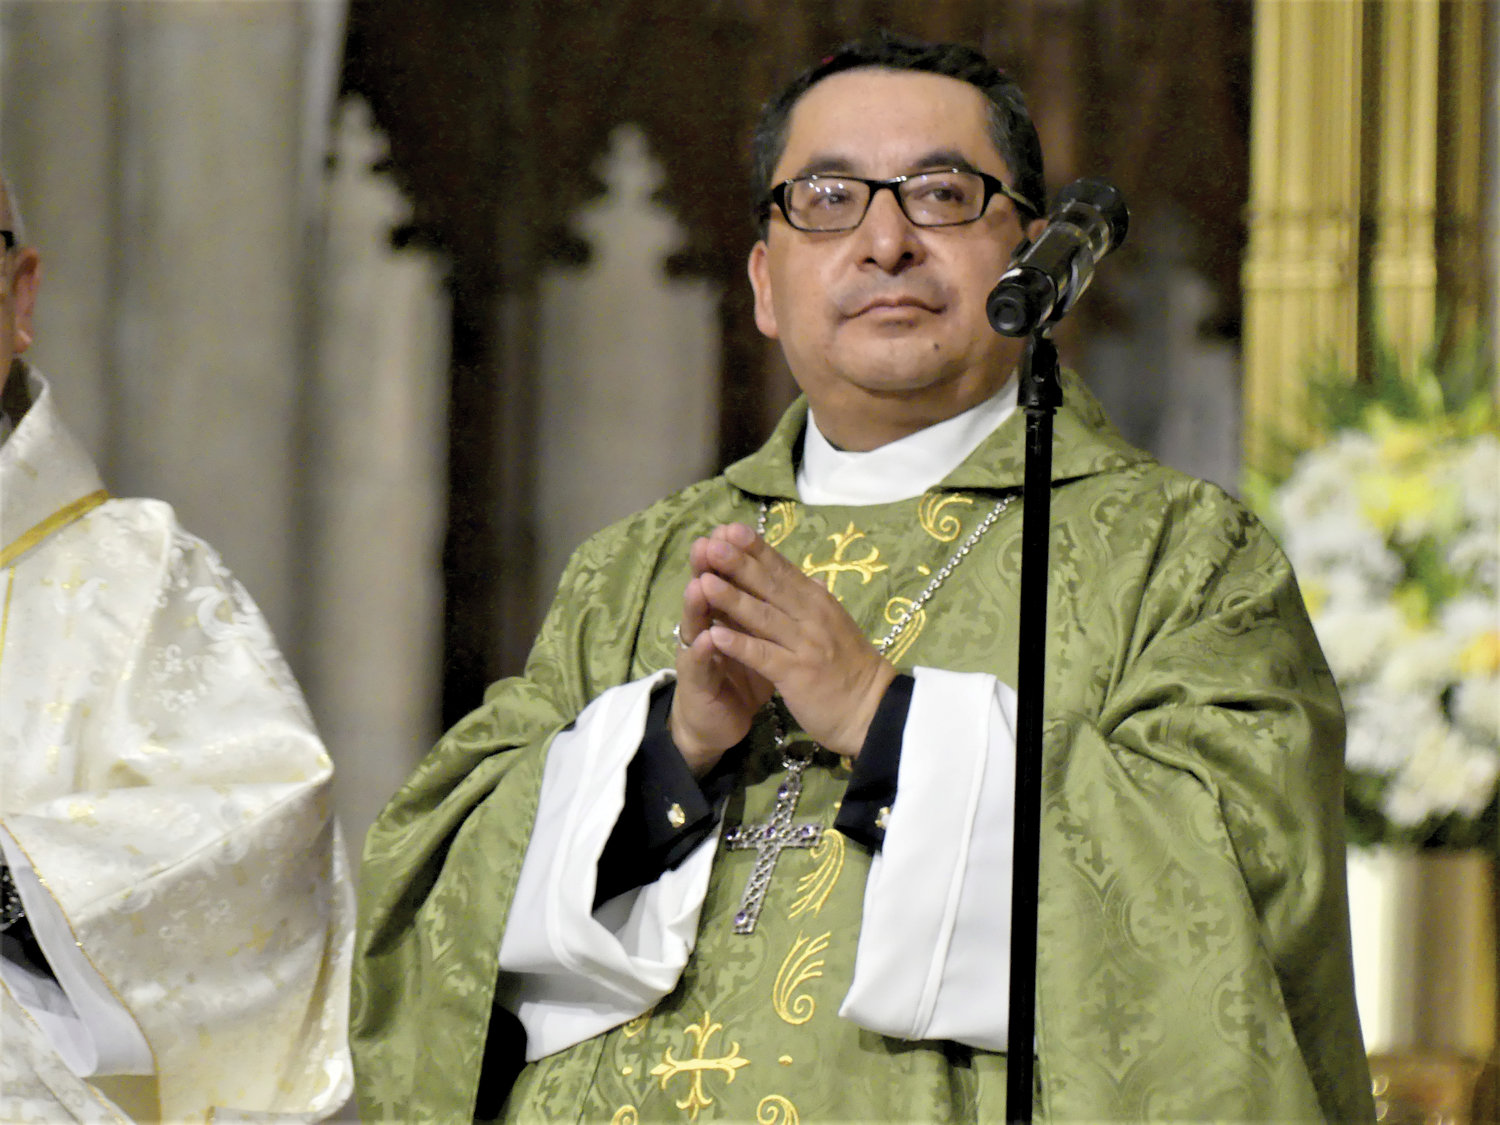 El obispo Oswaldo Cabrera de Azogues, Ecuador, servio como celebrante principal y homilista el 25 de septiembre durante la misa anual en honor de Nuestra Señora del Cisne en la Catedral de San Patricio.